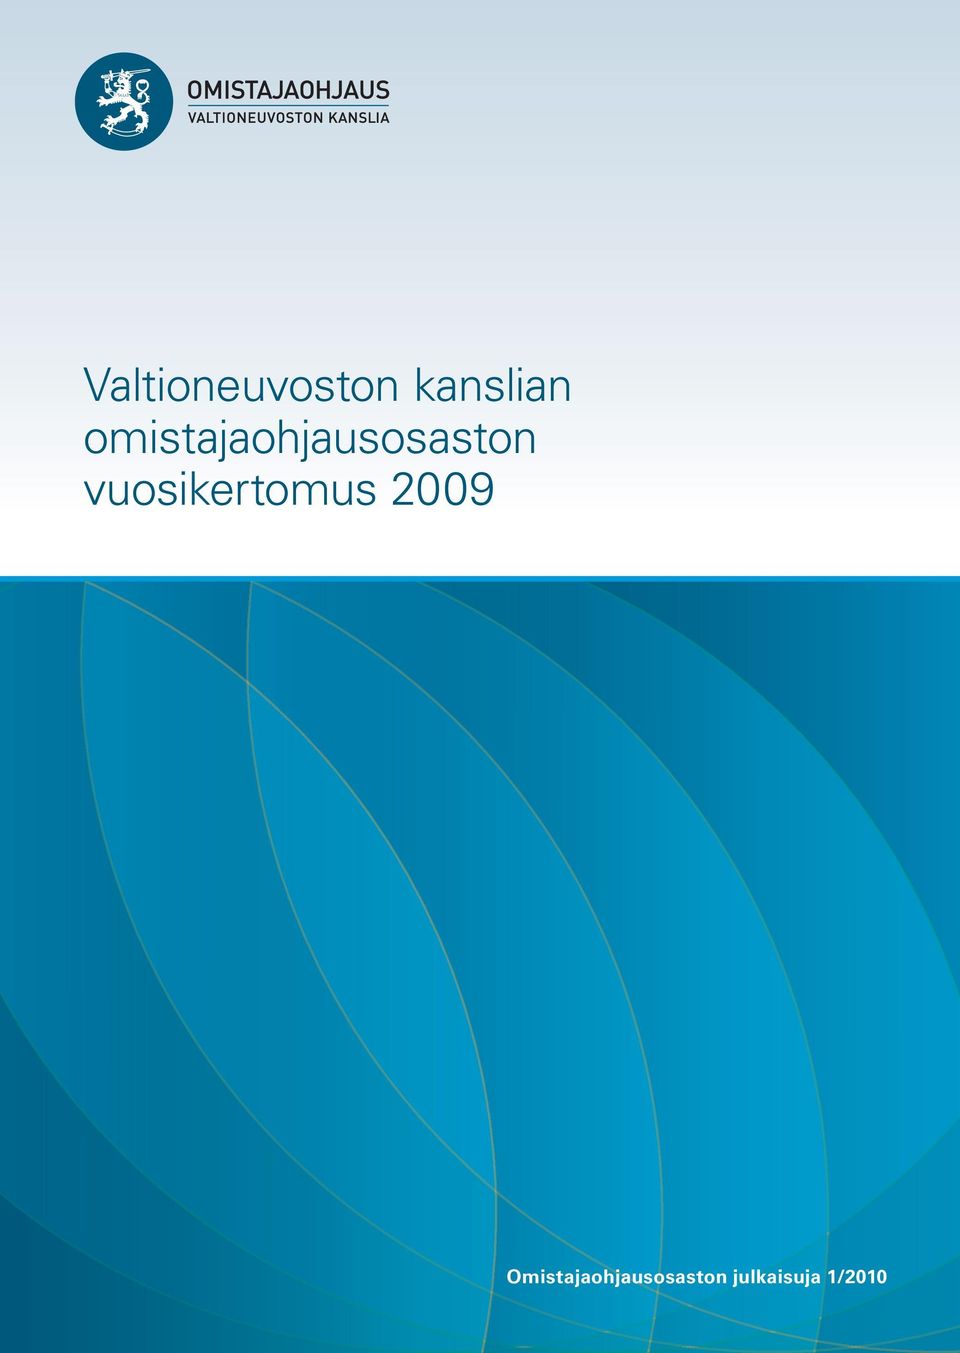 vuosikertomus 2009